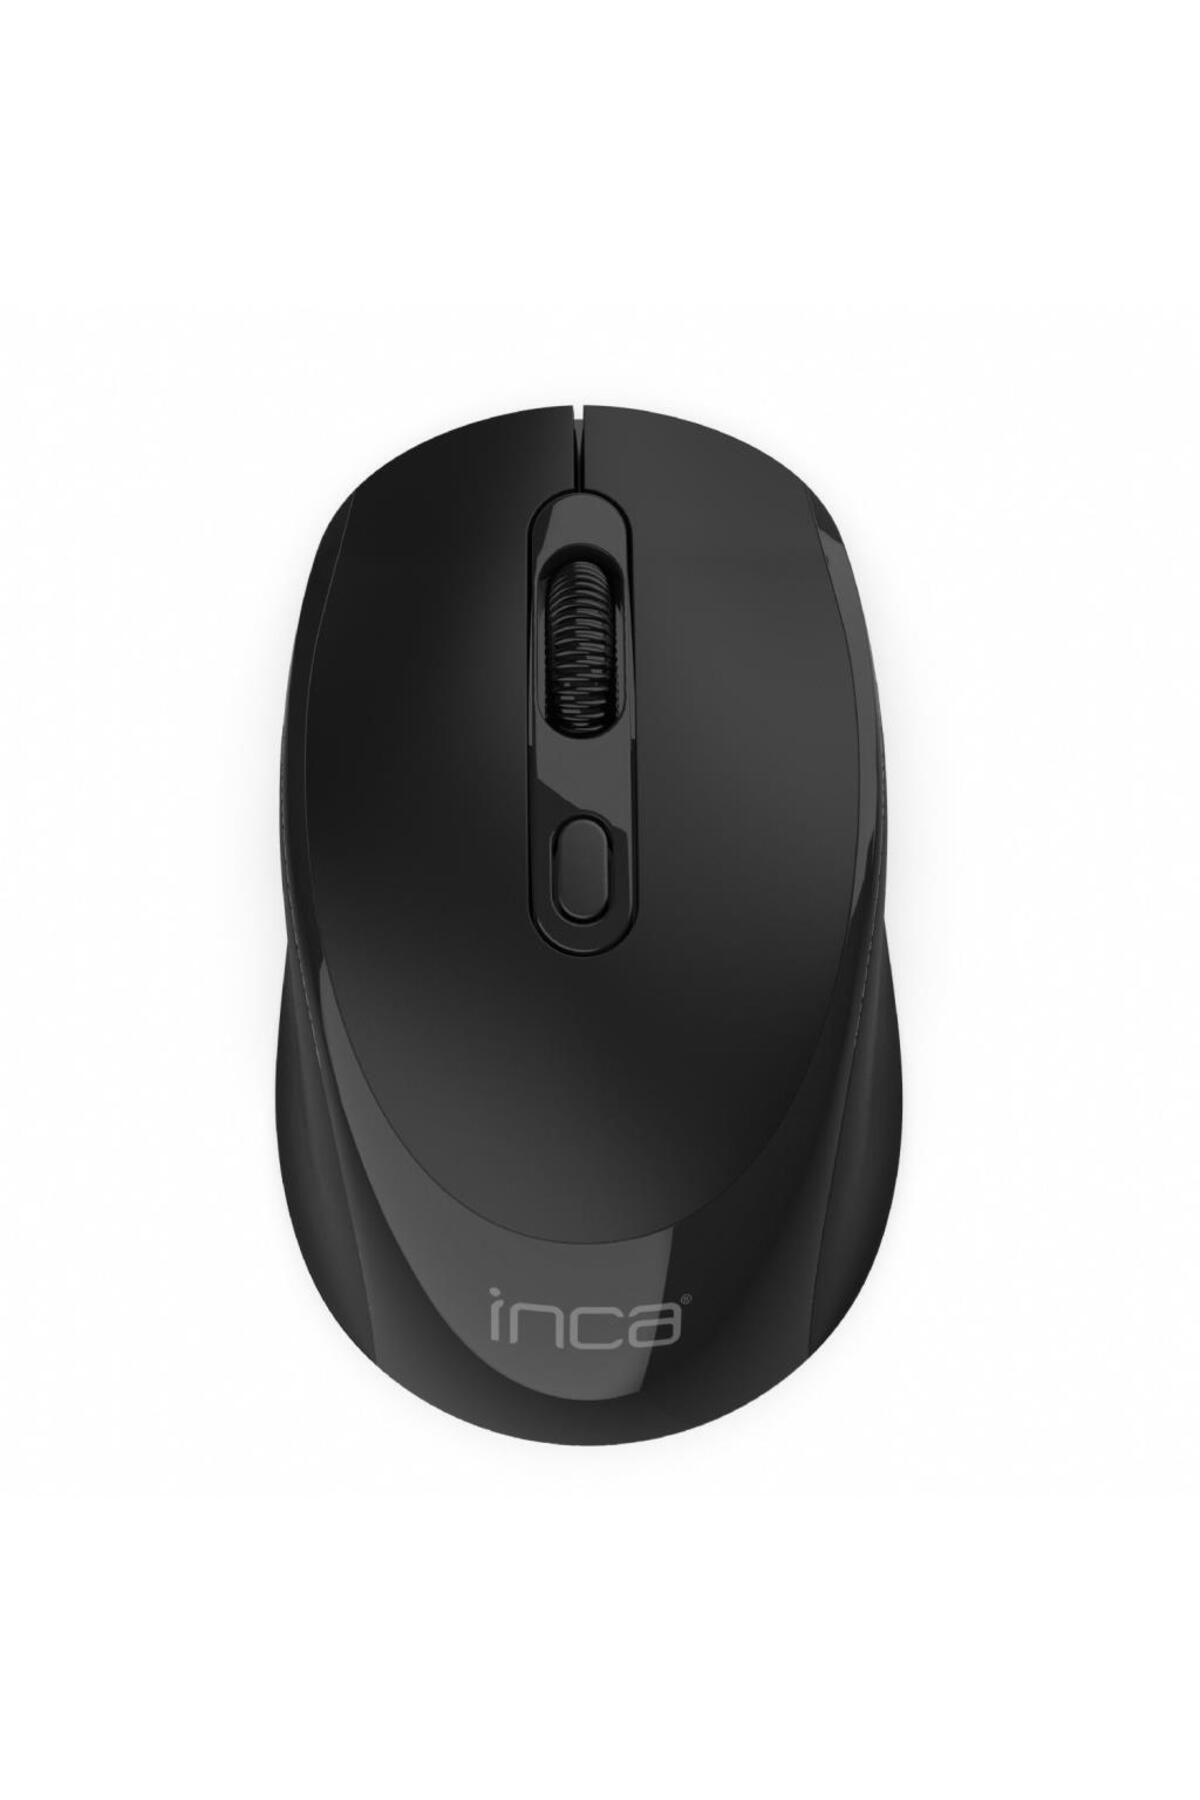 Inca Iwm-394t Kablosuz Mouse,siyah,1600dpi,